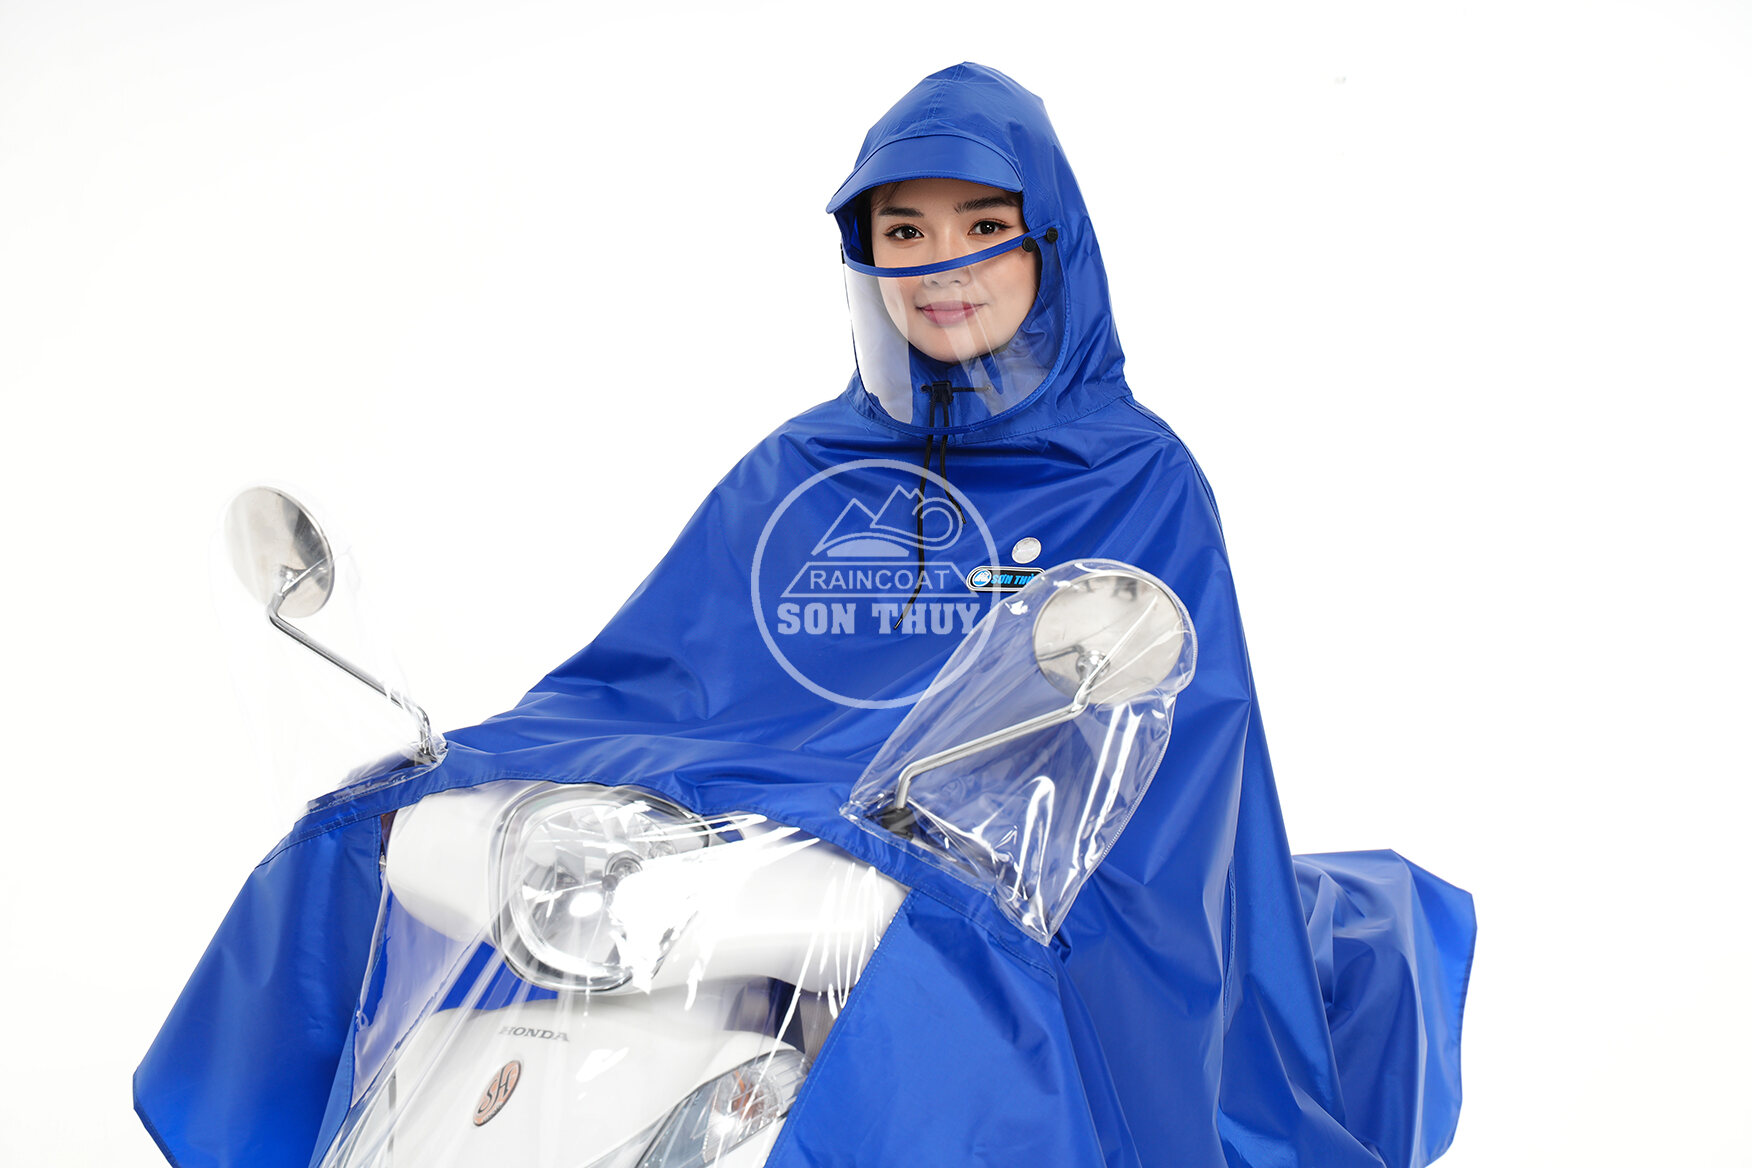 áo mưa choàng Sơn Thủy k26 , ảo mưa vải dù siêu nhẹ có kính che mặt thiết